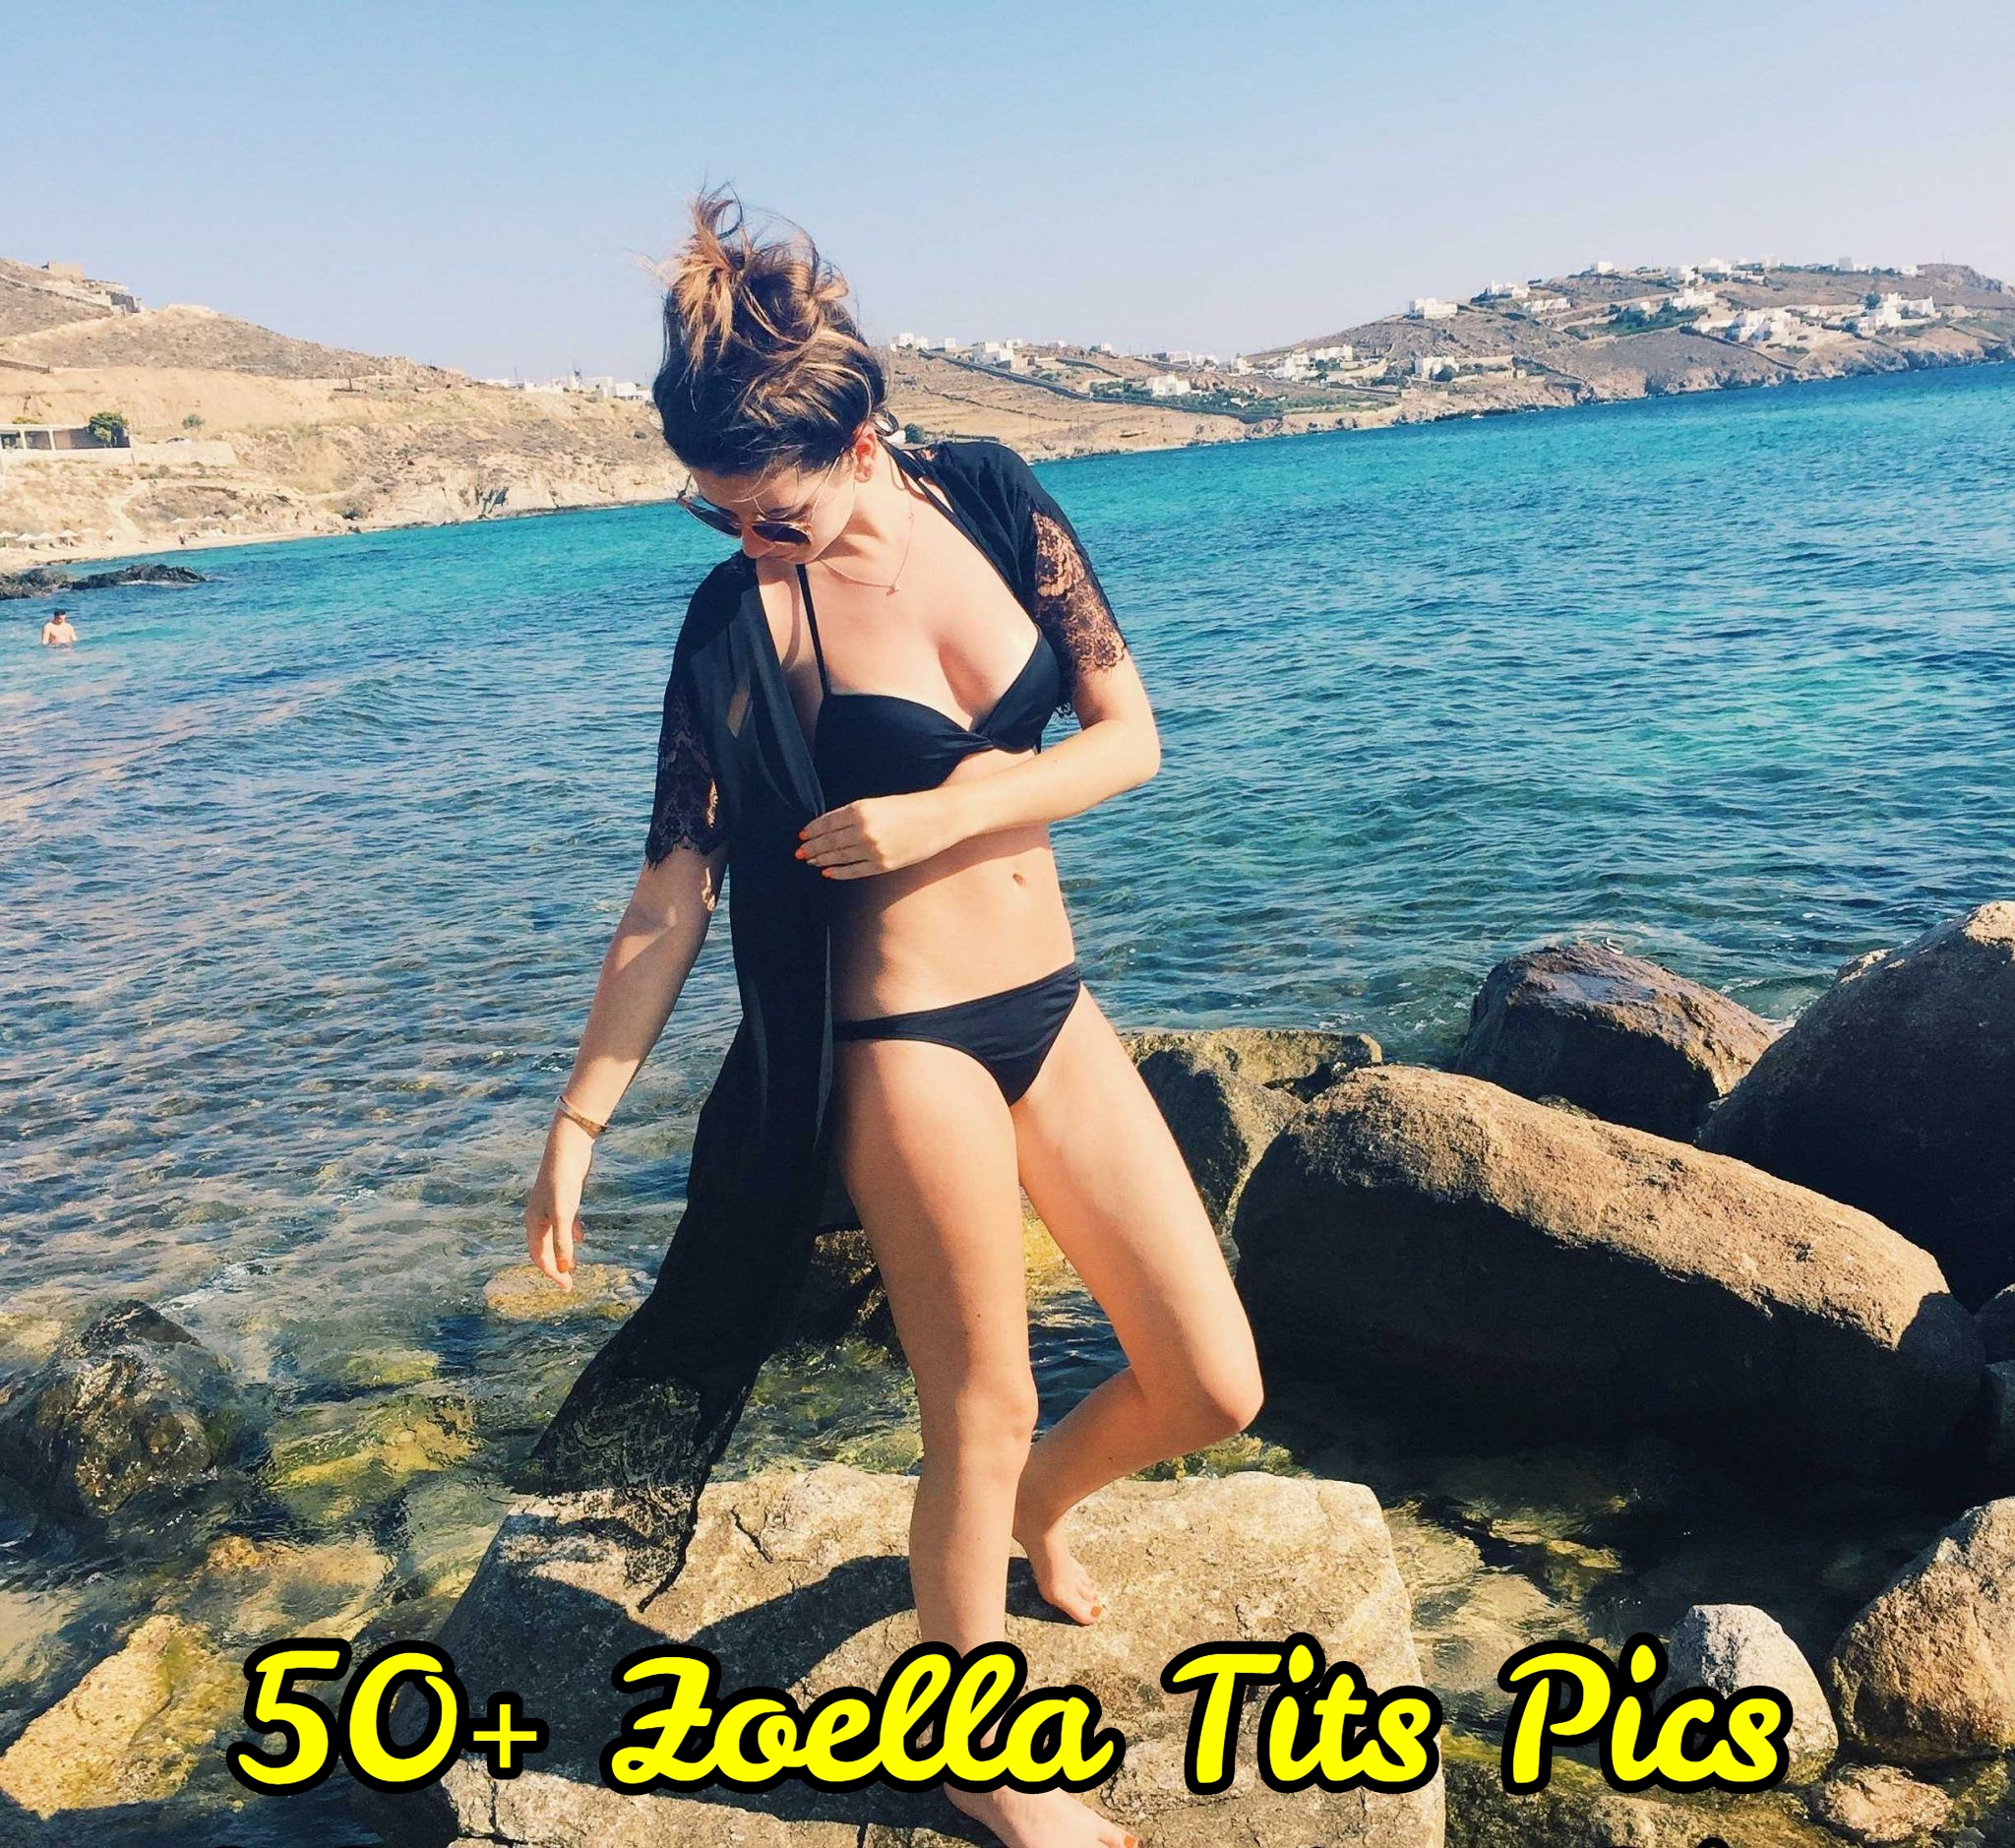 Zoella Tits Pics